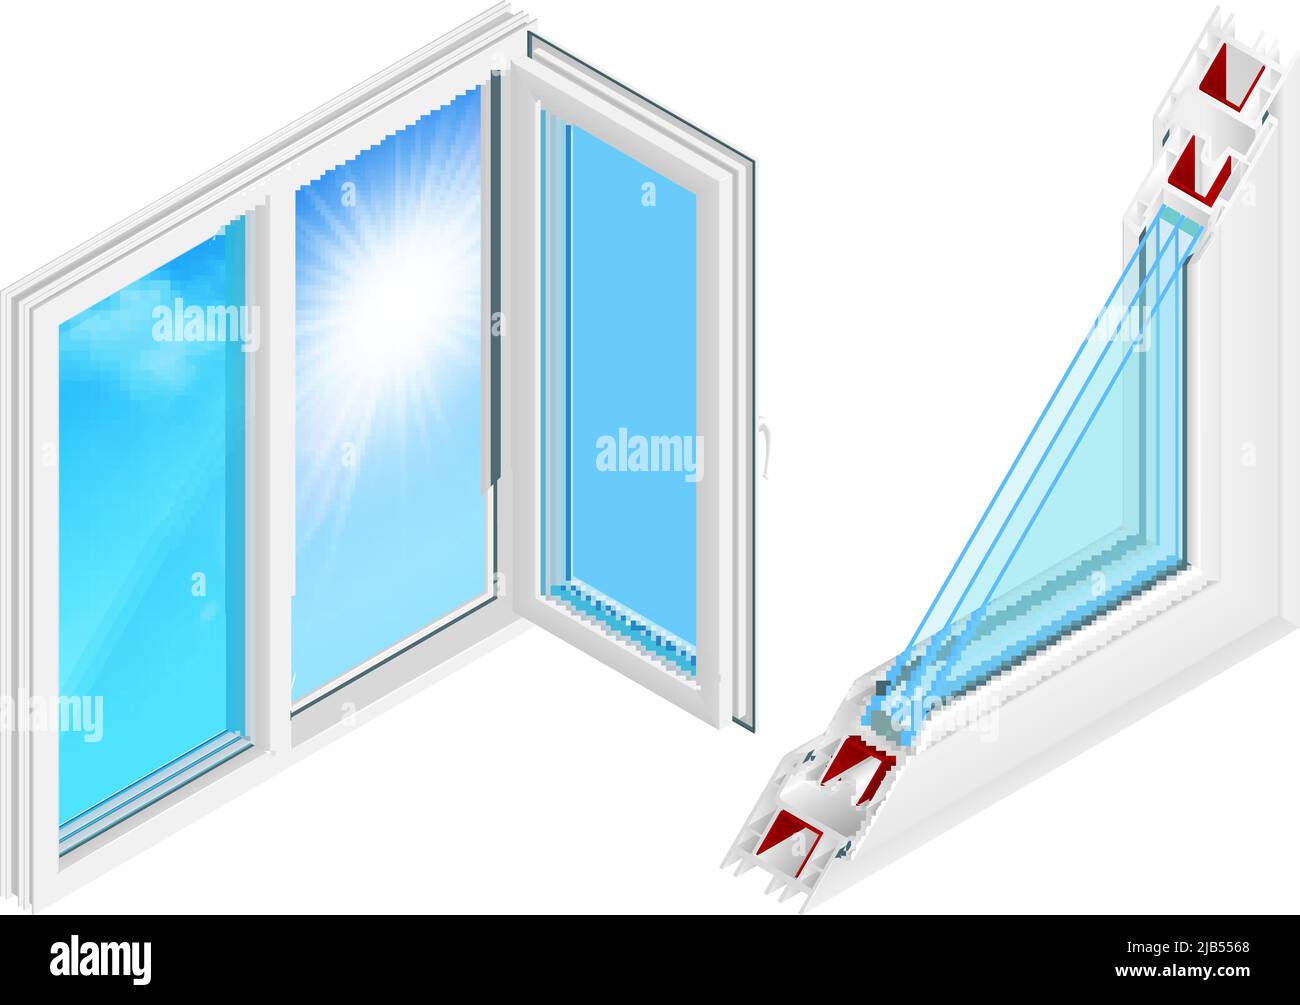 Kunststoff-Fenster Installation Design-Konzept mit geöffneten Flügel und Querschnitt Profil isometrische farbige Elemente isoliert Vektor-Illustration Stock Vektor